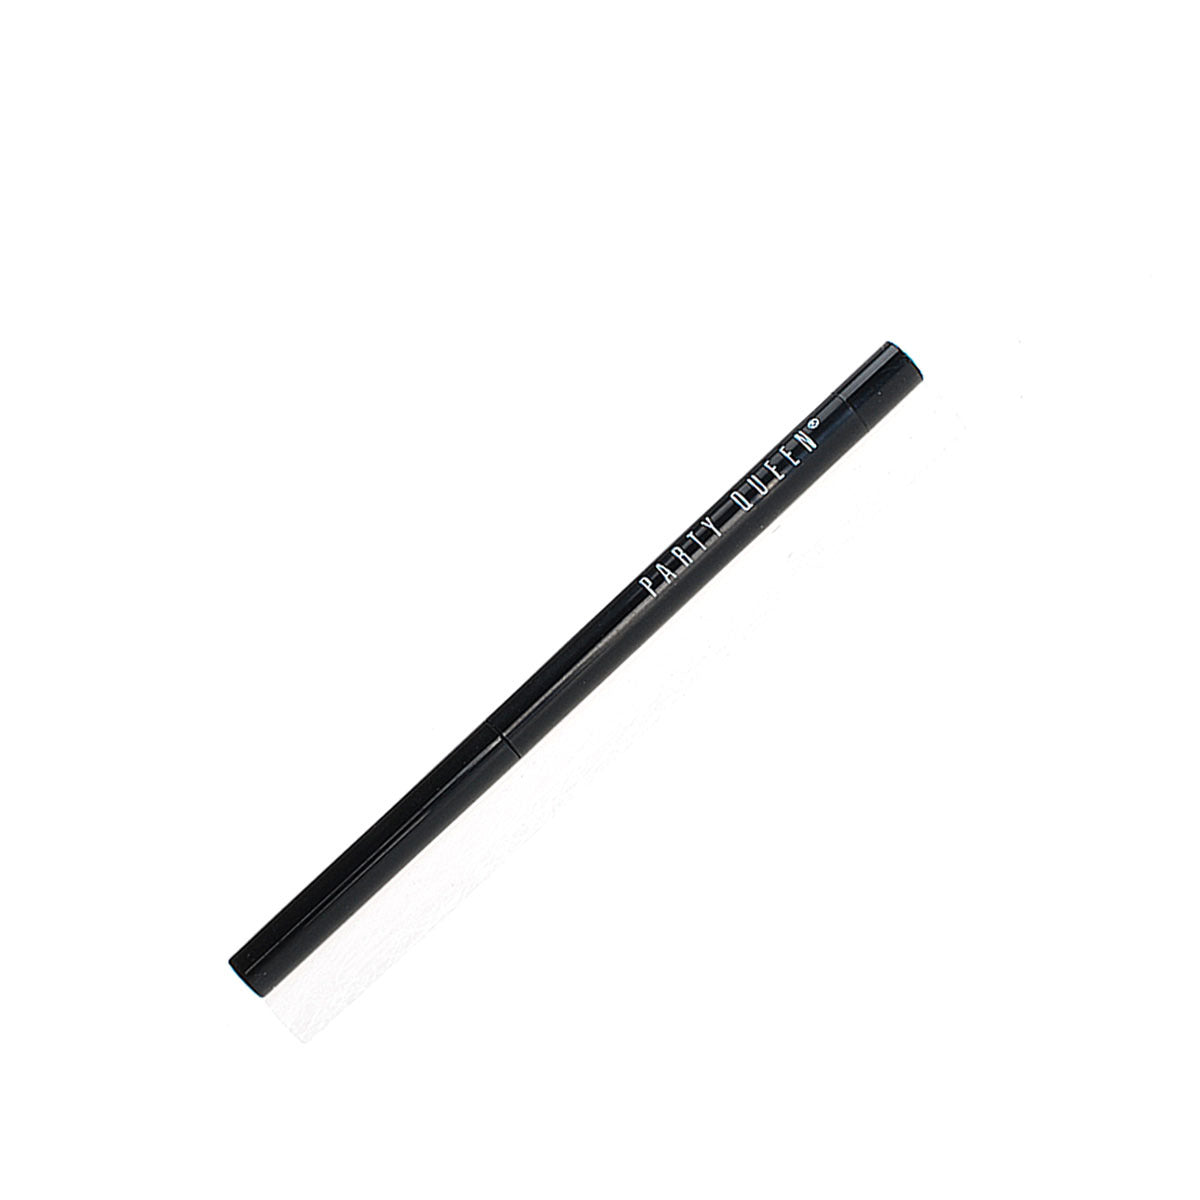 Party Queen Long Lasting Gel Eyeliner Waterproof Eye Liner Pen Free-cut Retractable Black Eyes Makeup Matic Pencil